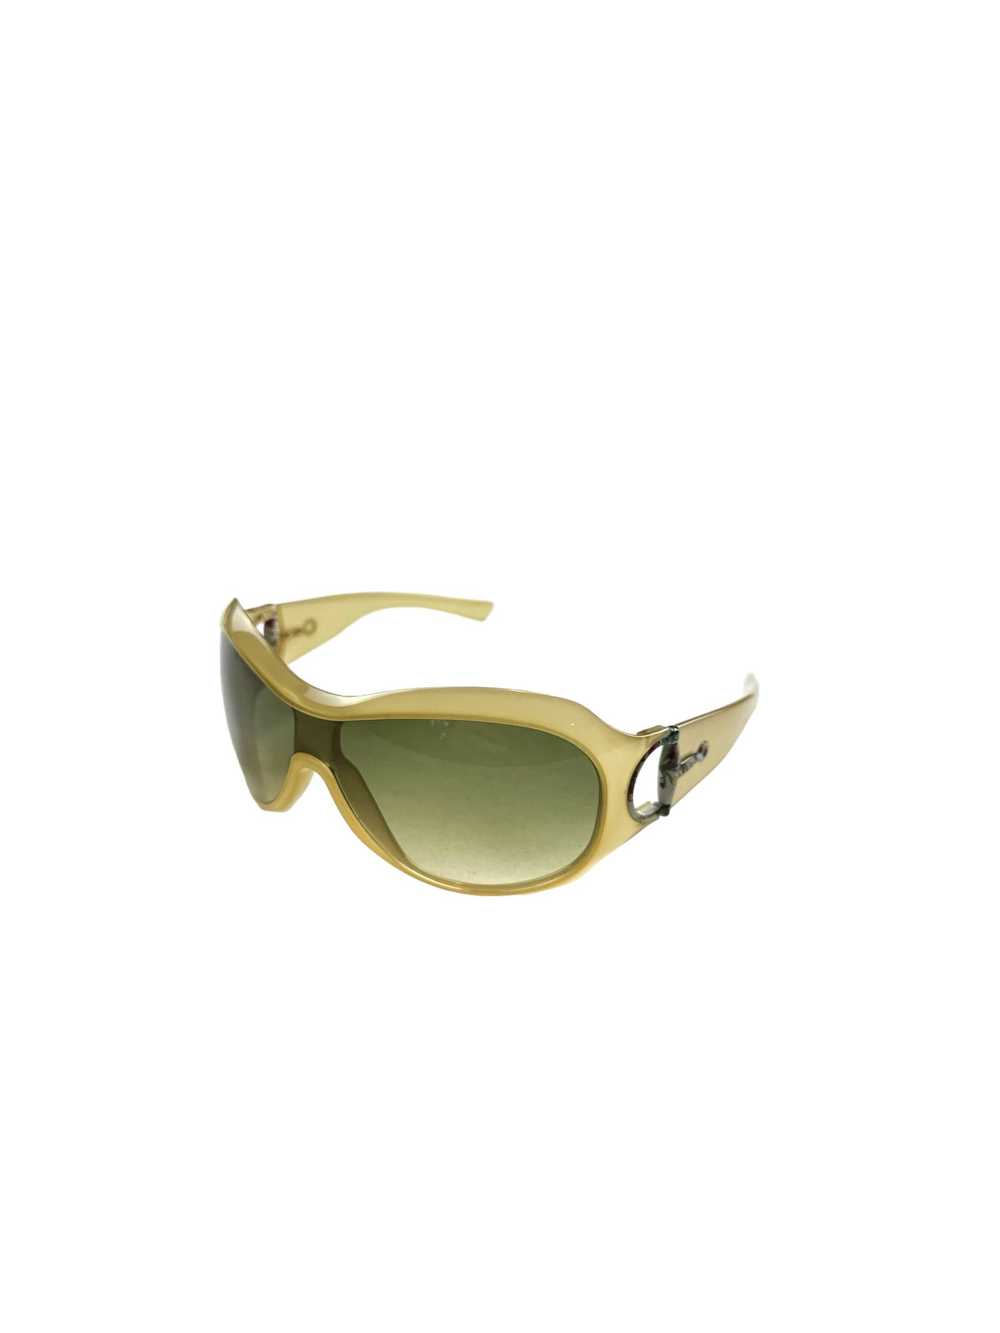 Gucci Gucci mask sunglasses - image 1